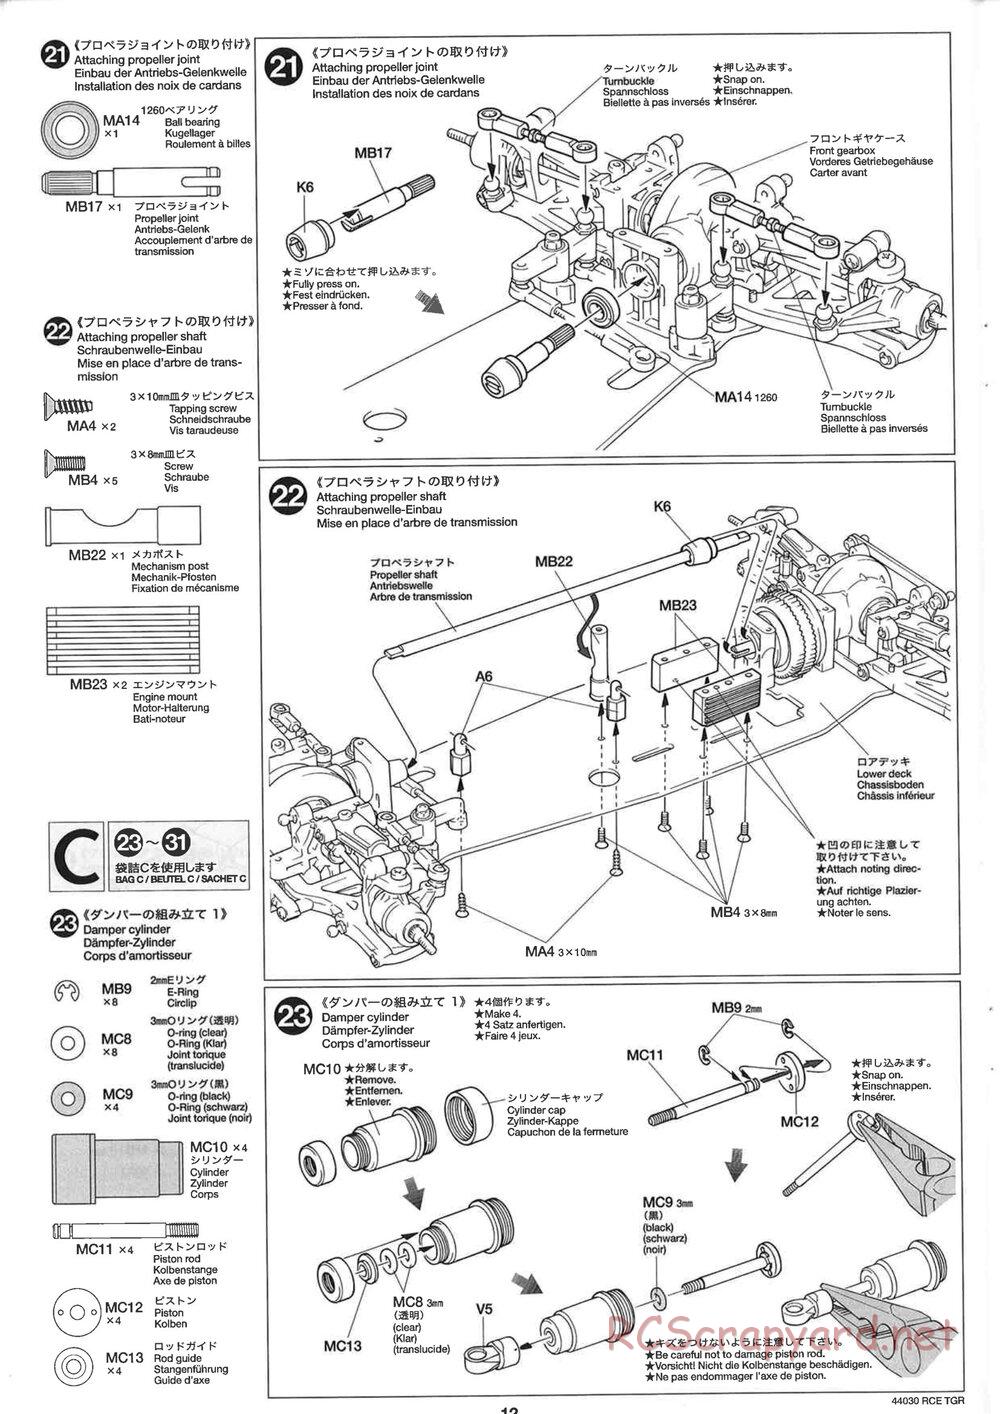 Tamiya - TGR Chassis - Manual - Page 12